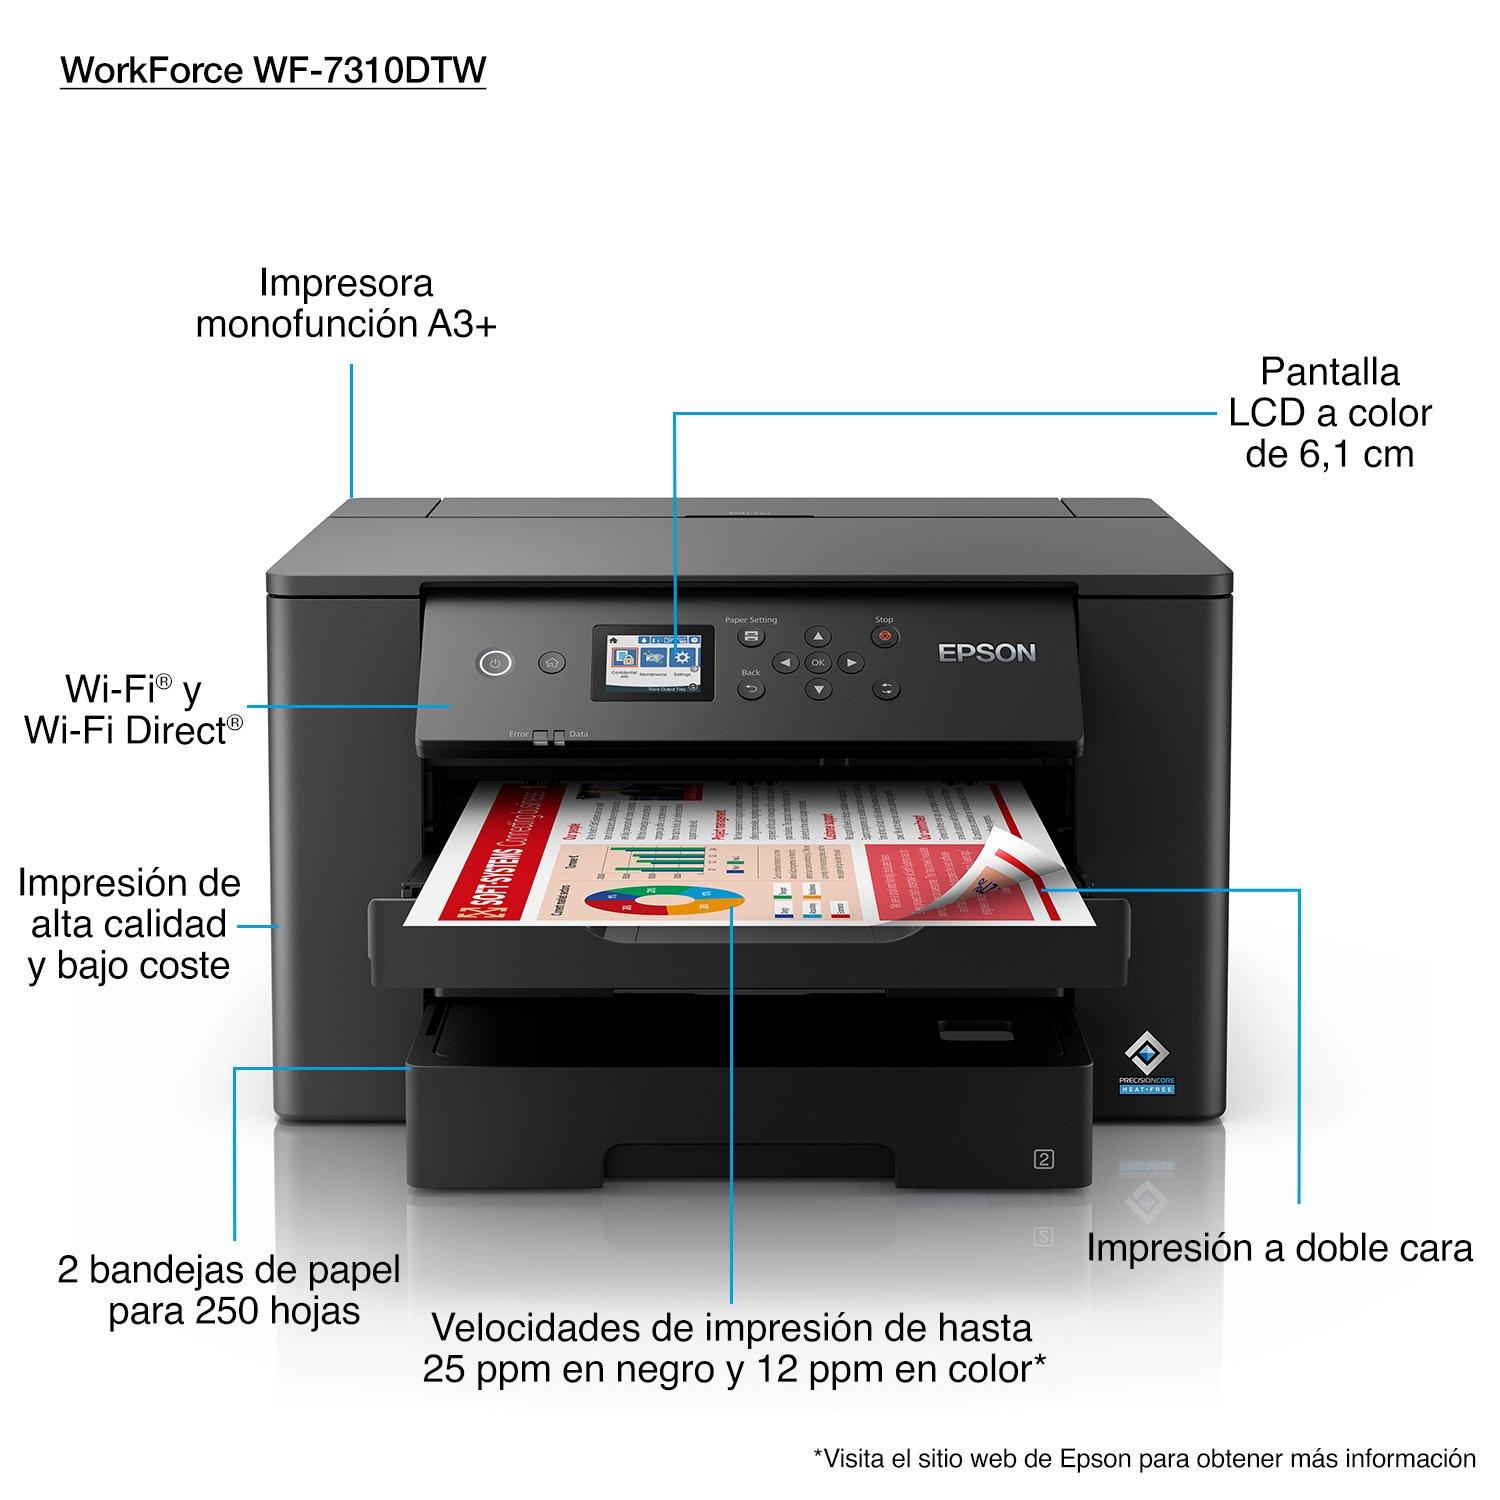 Impresora Monofunción Wf-7310dtw - A3 - Color - Wi-fi Epson con